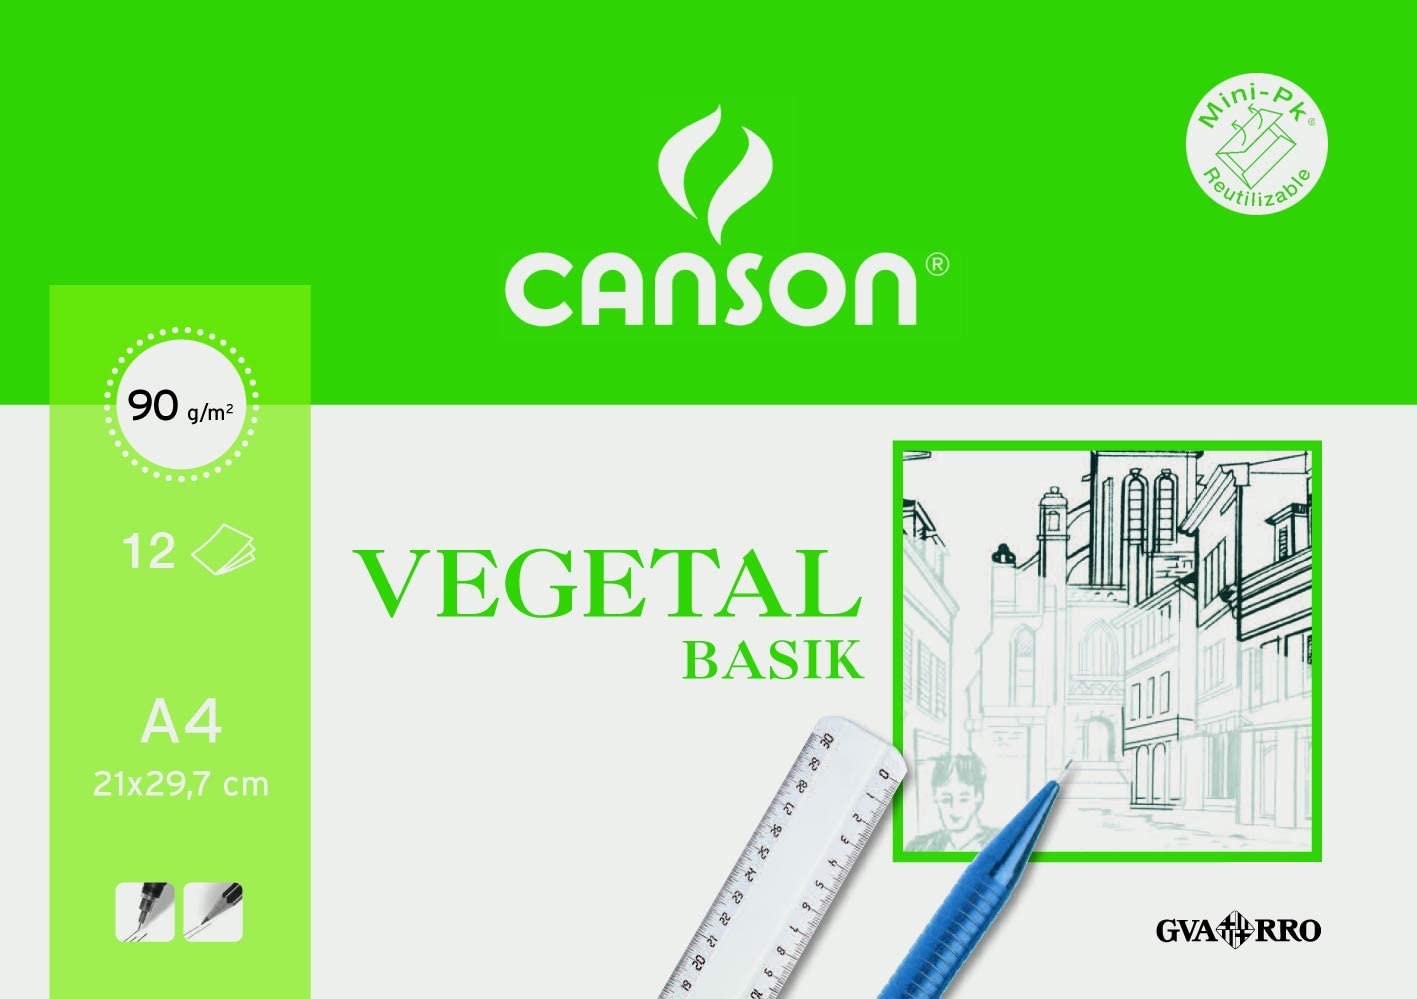 Papel vegetal Canson